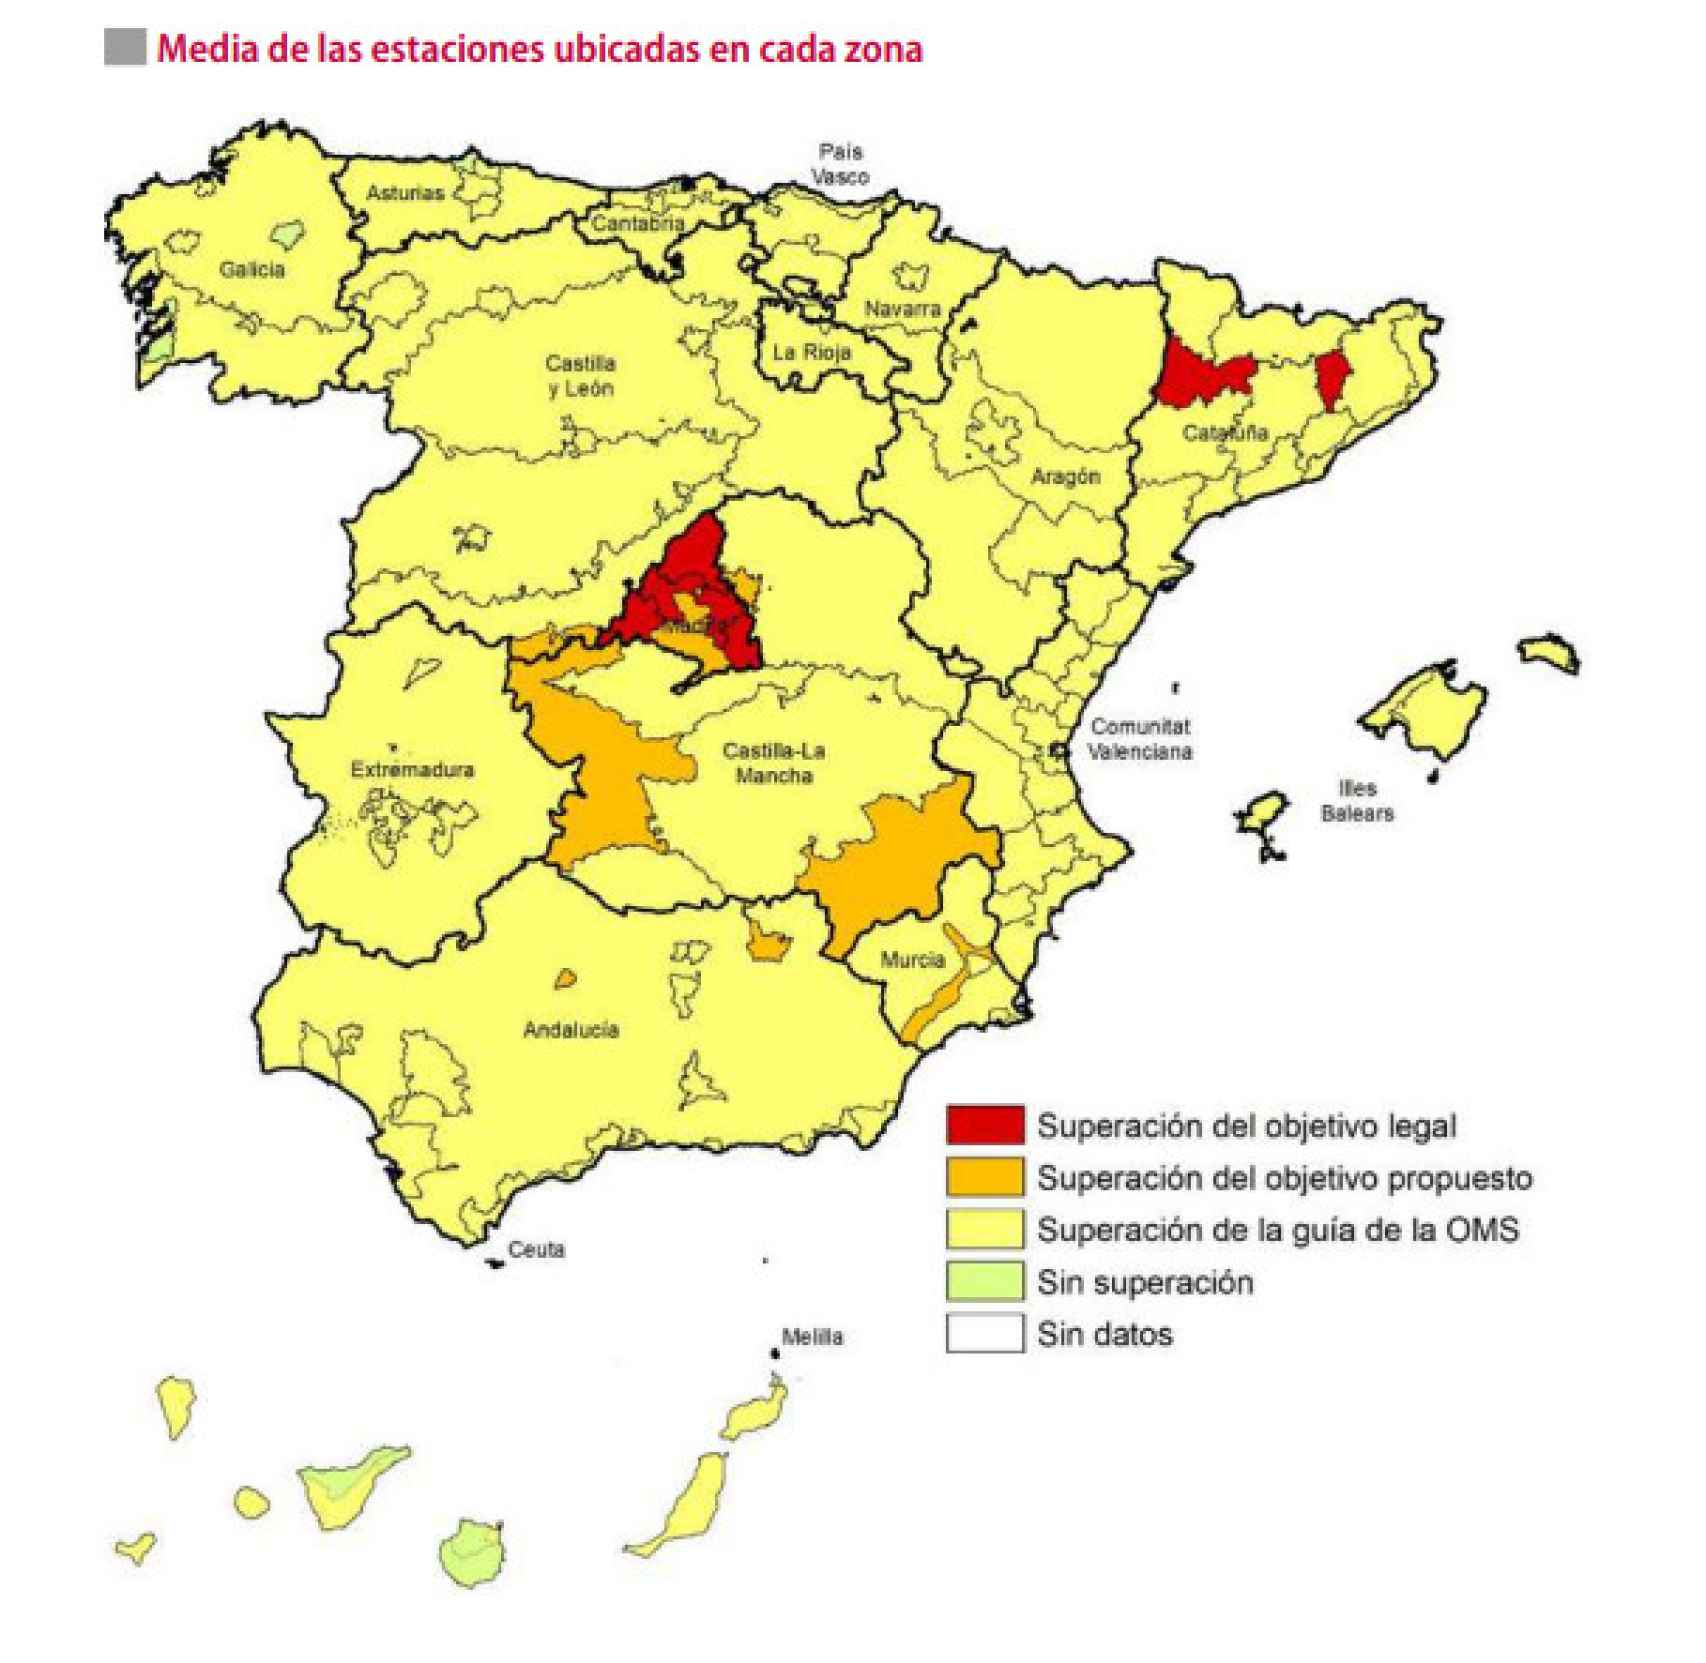 Media de las estaciones ubicadas en cada zona del territorio español.